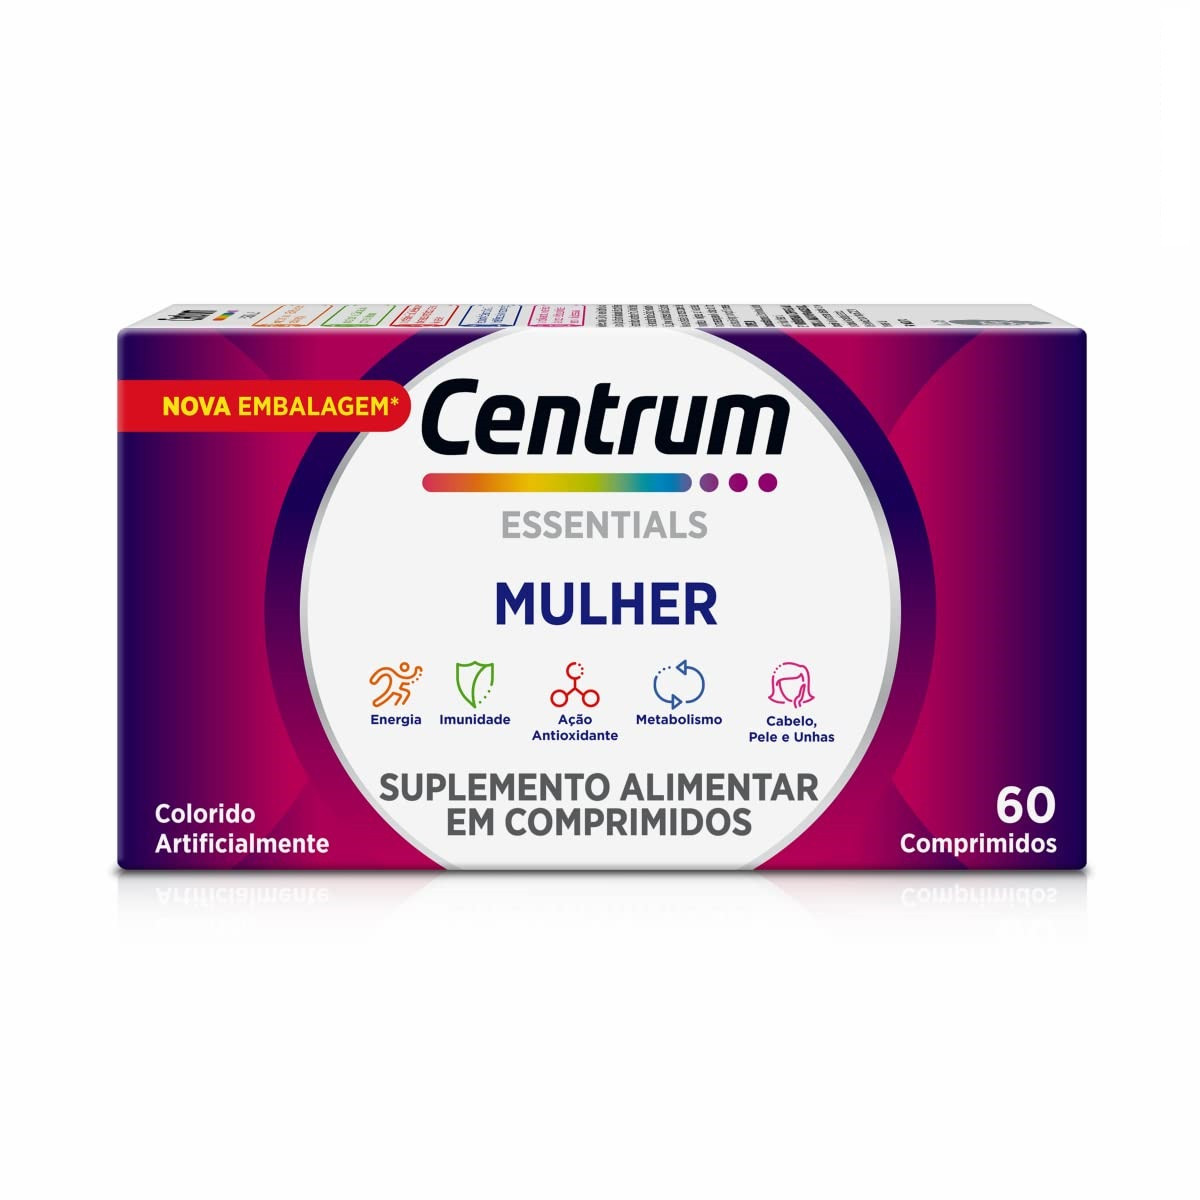 Centrum Mulher Multivitamínico com 60 Comprimidos